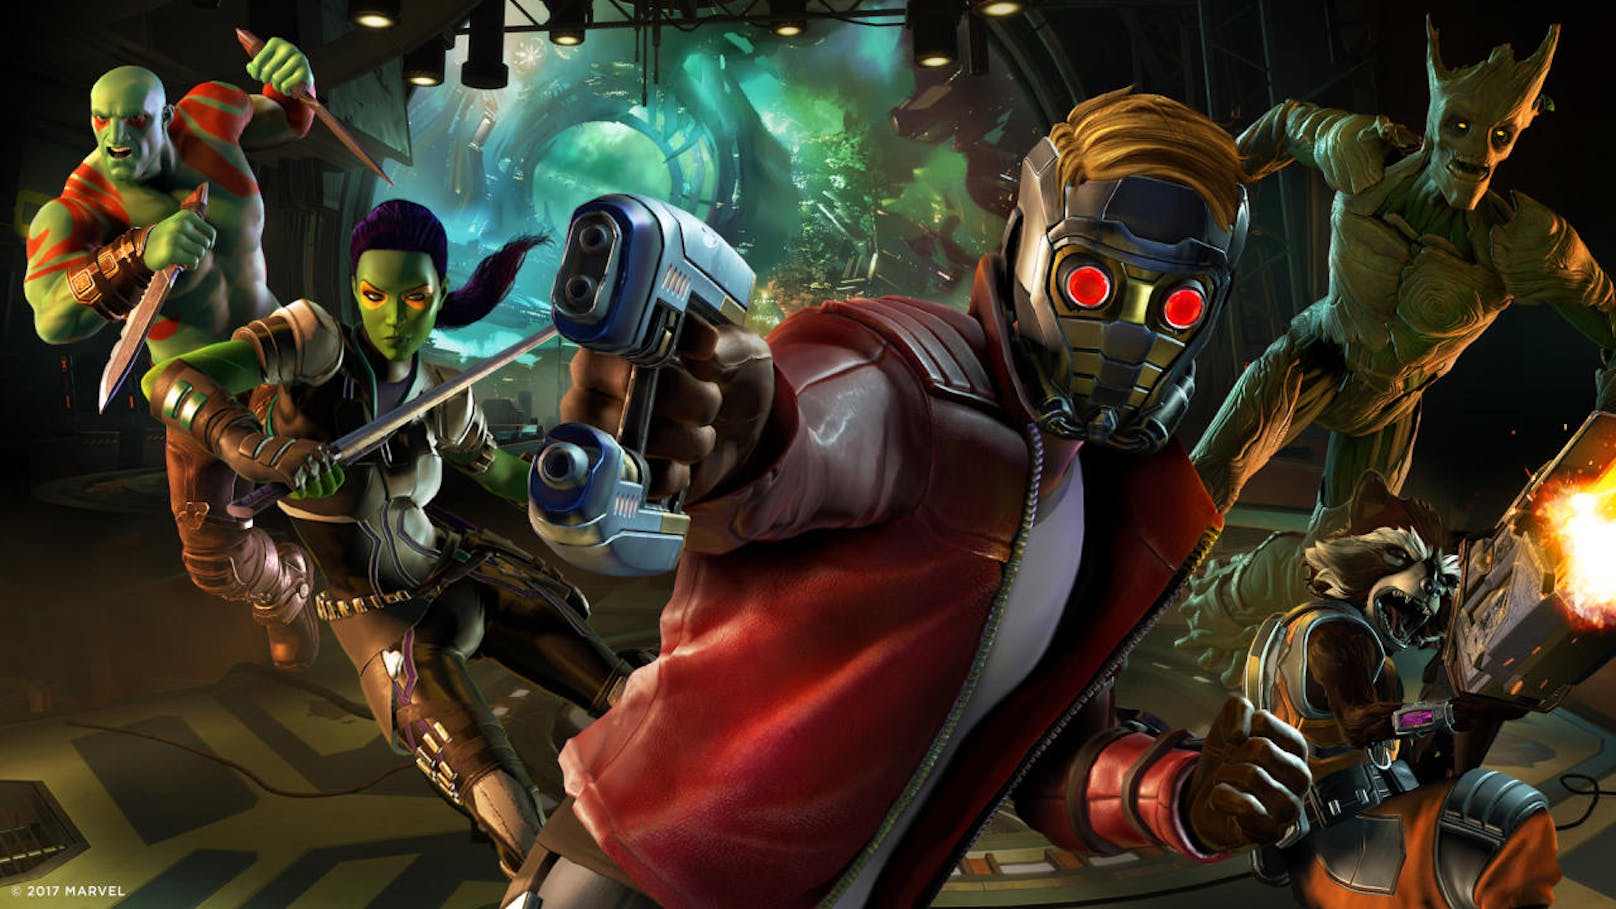 Die ungewöhnlichen Helden Star Lord, Gamora, Drax, Rocket und Groot stürzen sich ins Telltale-Abenteuer.